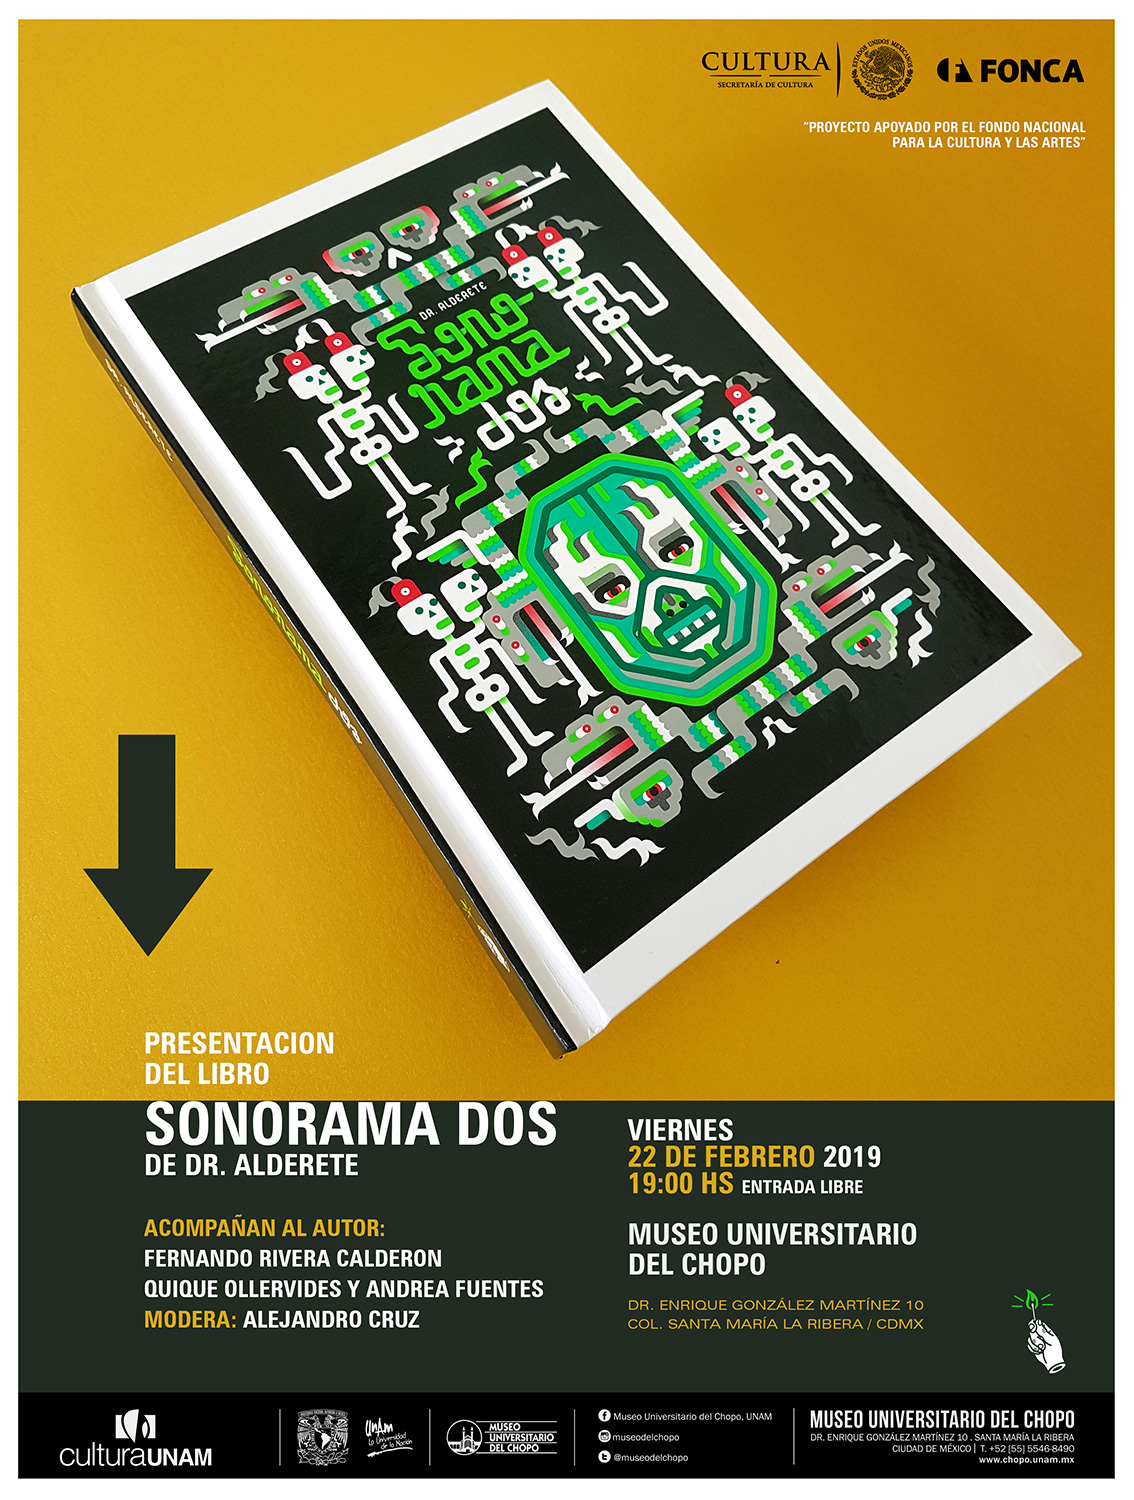 Presentación del libro Sonorama 2 de Dr Alderete en @museodelchopo - 22  febrero. 19h #EntradaLibre - Dessignare Media - Arte y Animación